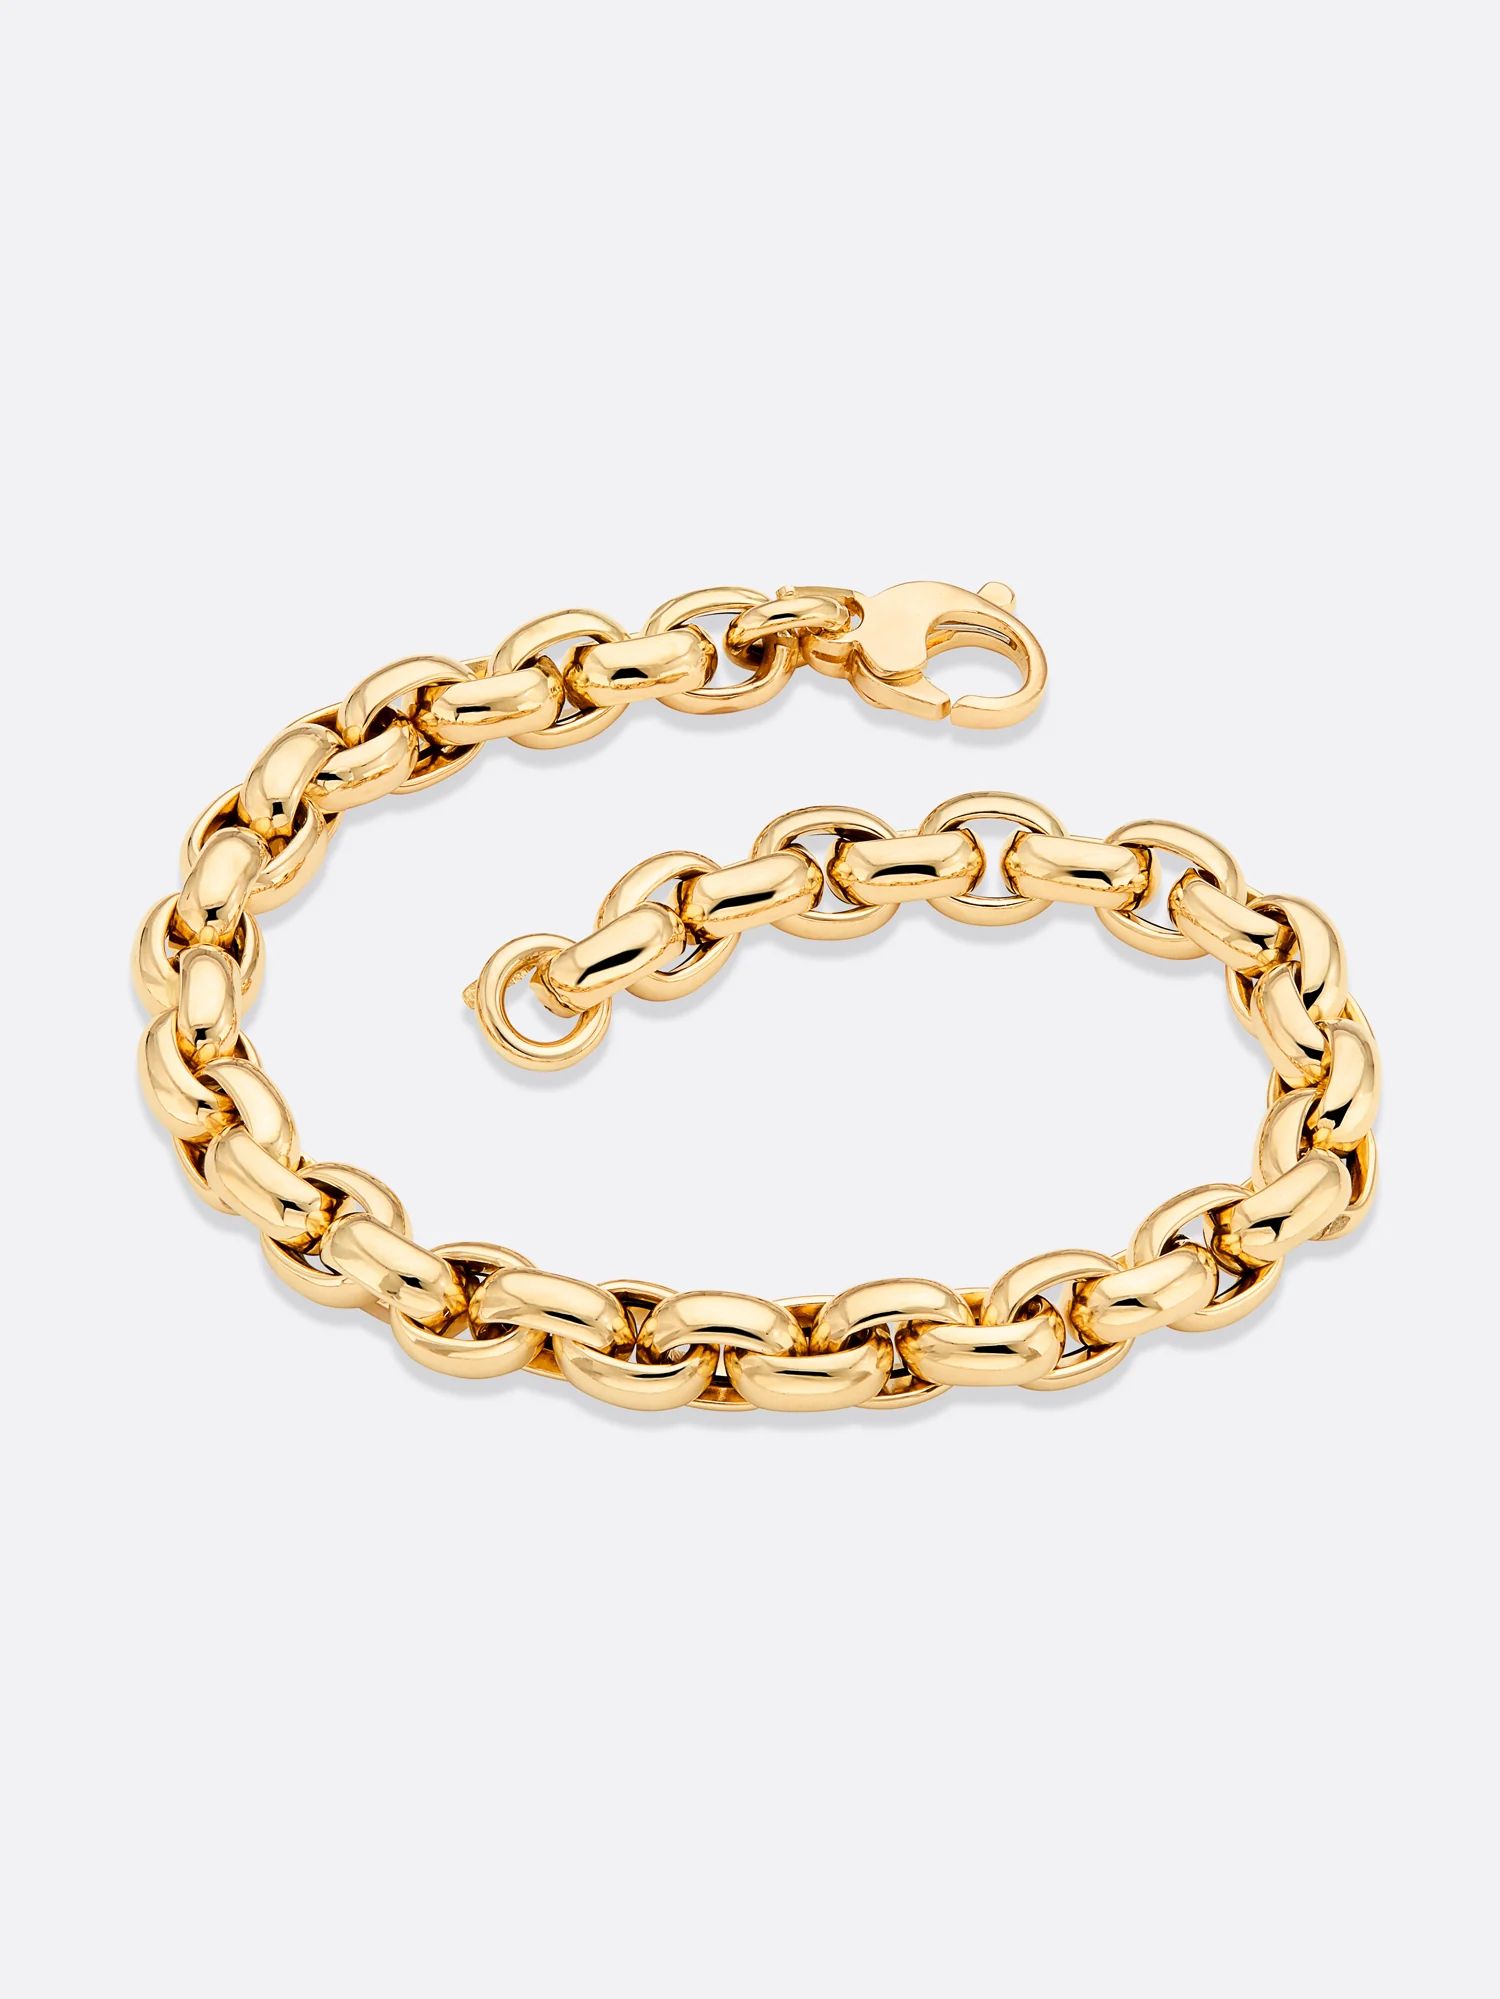 Brochu Walker | Women's Fine Jewelry Icons Yellow Gold Rolo Link Bracelet | Brochu Walker